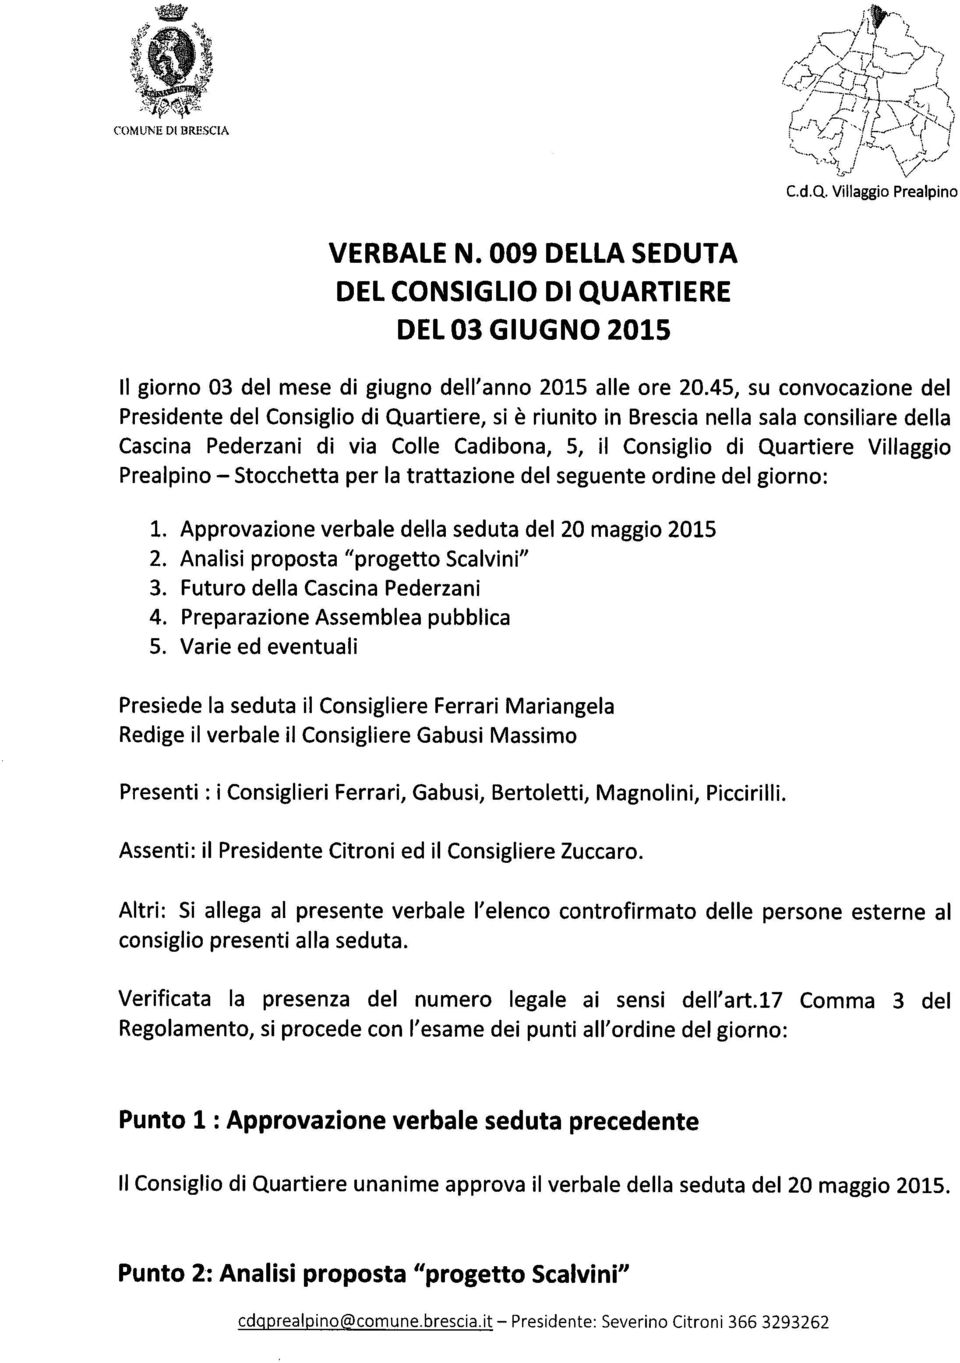 Prealpino - Stocchetta per la trattazione del seguente ordine del giorno: 1. Approvazione verbale della seduta del 20 maggio 2015 2. Analisi proposta "progetto Scalvini" 3.